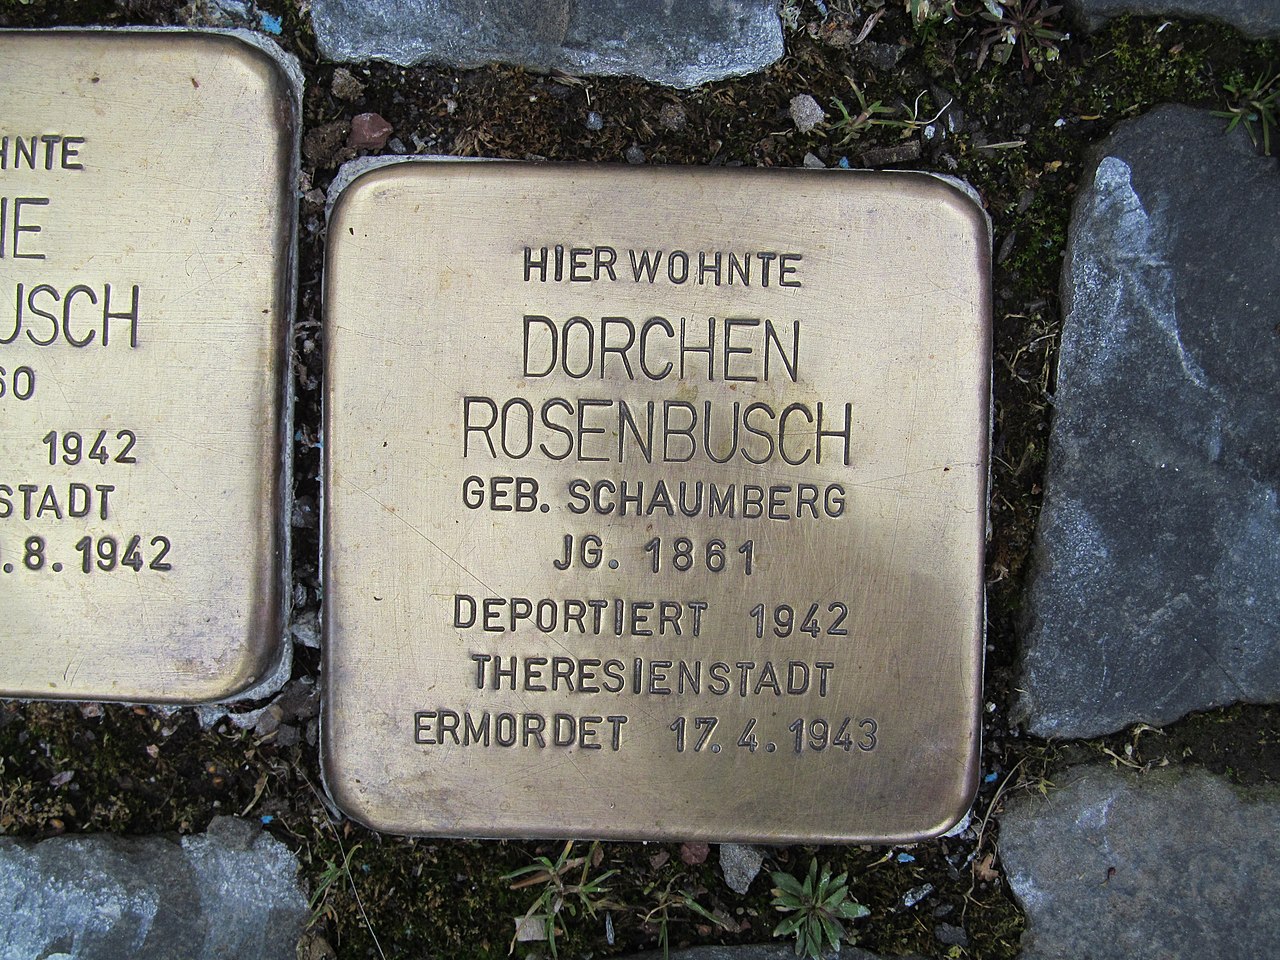 Stolperstein Dorchen Rosenbusch, 1, Marktstraße 6, Borken, Schwalm-Eder-Kreis.jpg